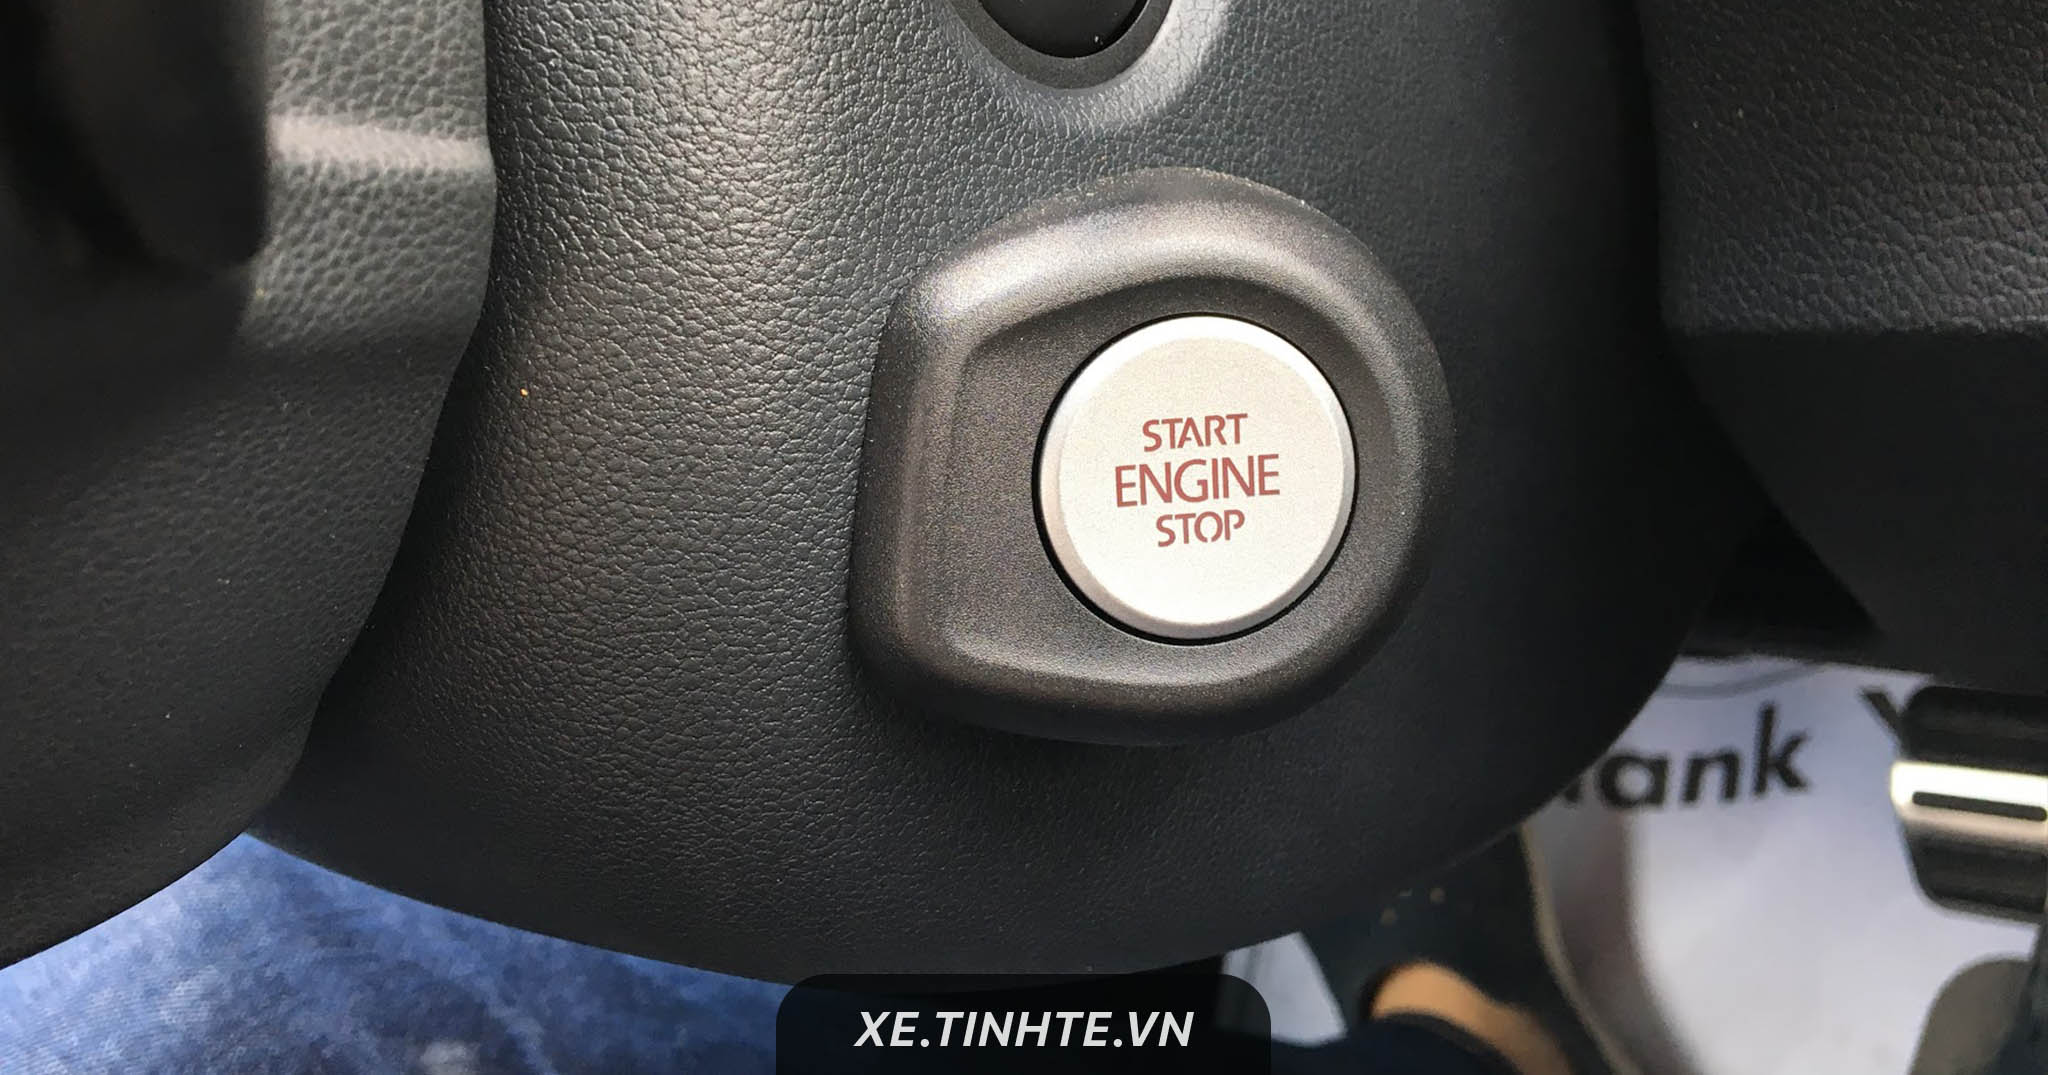 Điều gì xảy ra nếu nhấn nút Start/Stop Engine khi xe đang chạy - Đừng thử bằng xe bạn